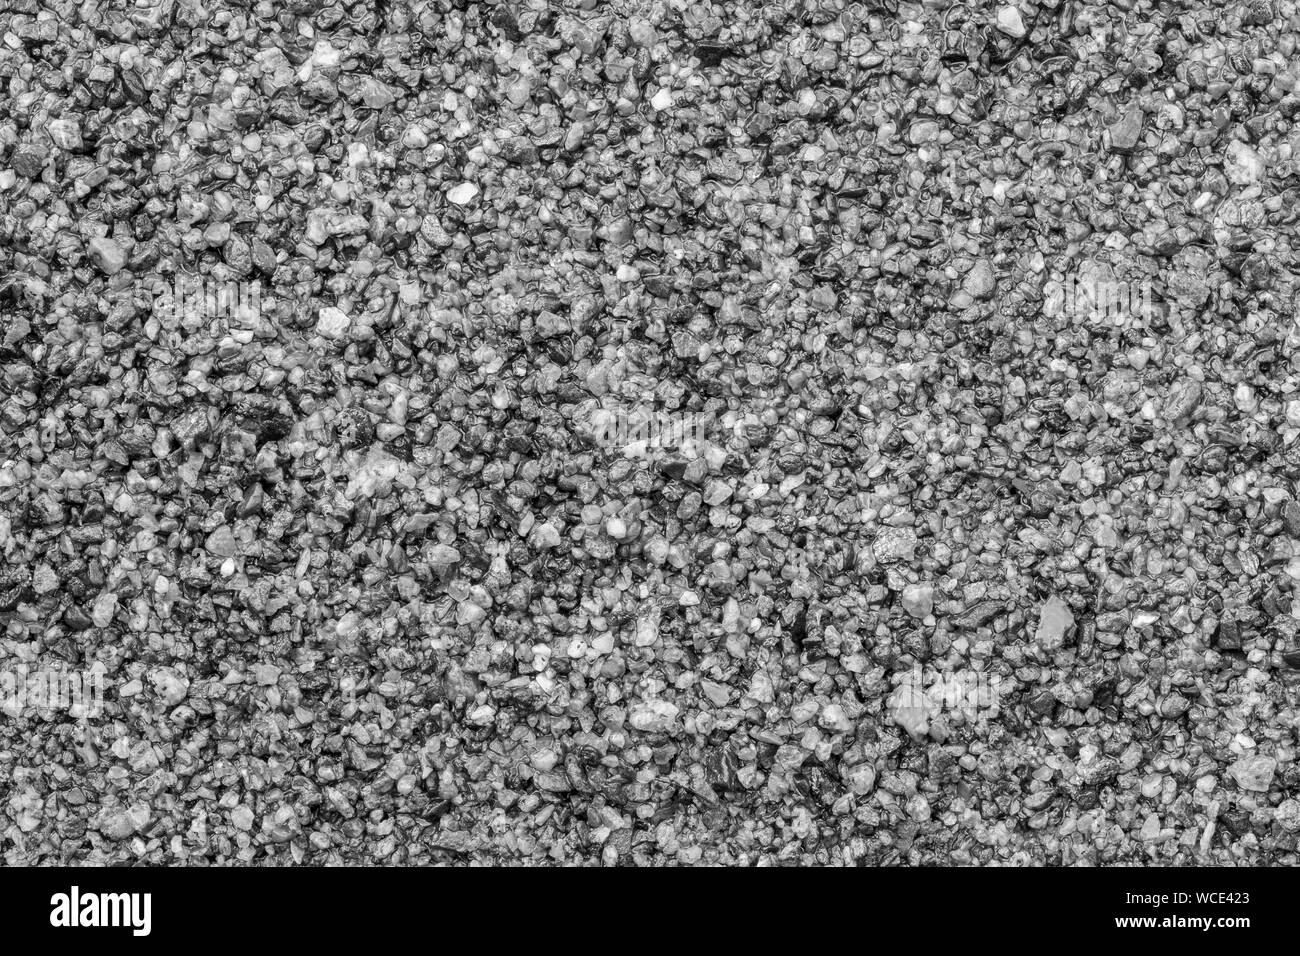 Makro Nahaufnahme von nassem Sand, gesehen von oben in Schwarz und Weiß. Hochauflösende full frame strukturierten Hintergrund. Stockfoto